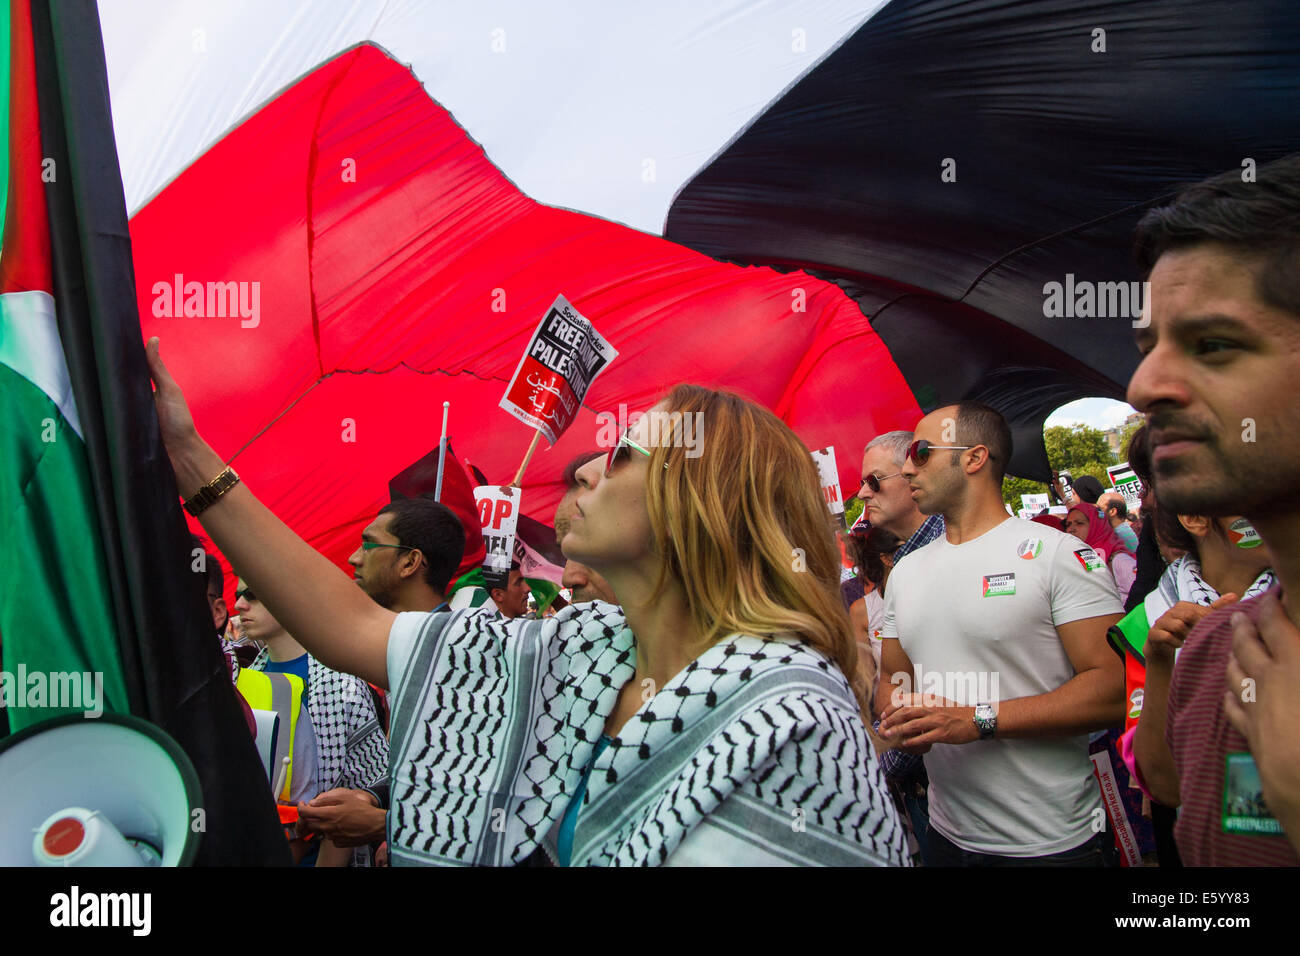 Londres, Reino Unido. El 9 de agosto de 2014. Los manifestantes escuchar discursos bajo una gigantesca bandera palestina como decenas de miles de personas asisten a una manifestación en apoyo del pueblo de Palestina. Crédito: Paul Davey/Alamy Live News Foto de stock